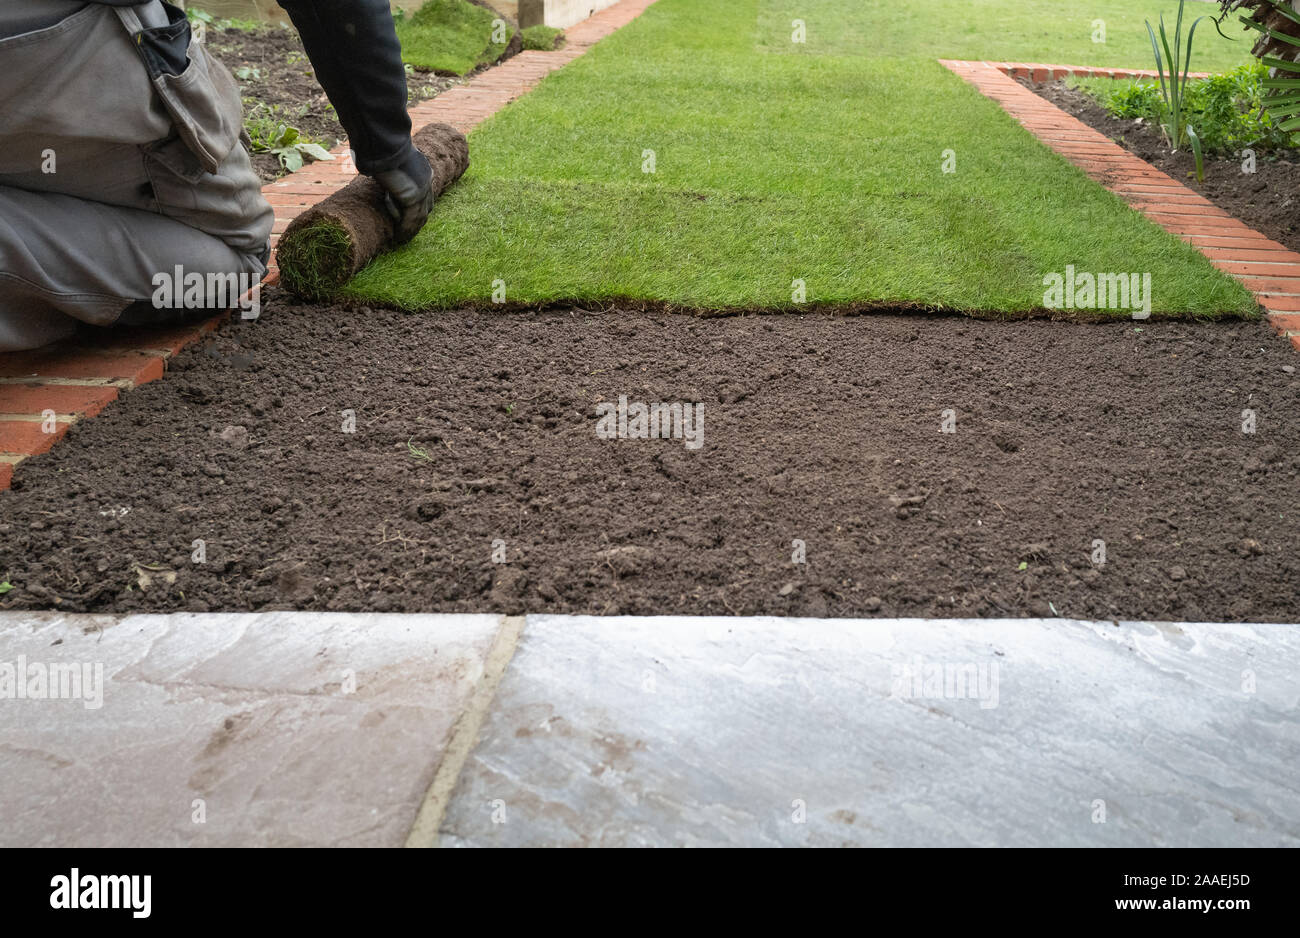 Nouveau gazon herbe étant installé dans un jardin, le long de la bordure de la brique. Banque D'Images